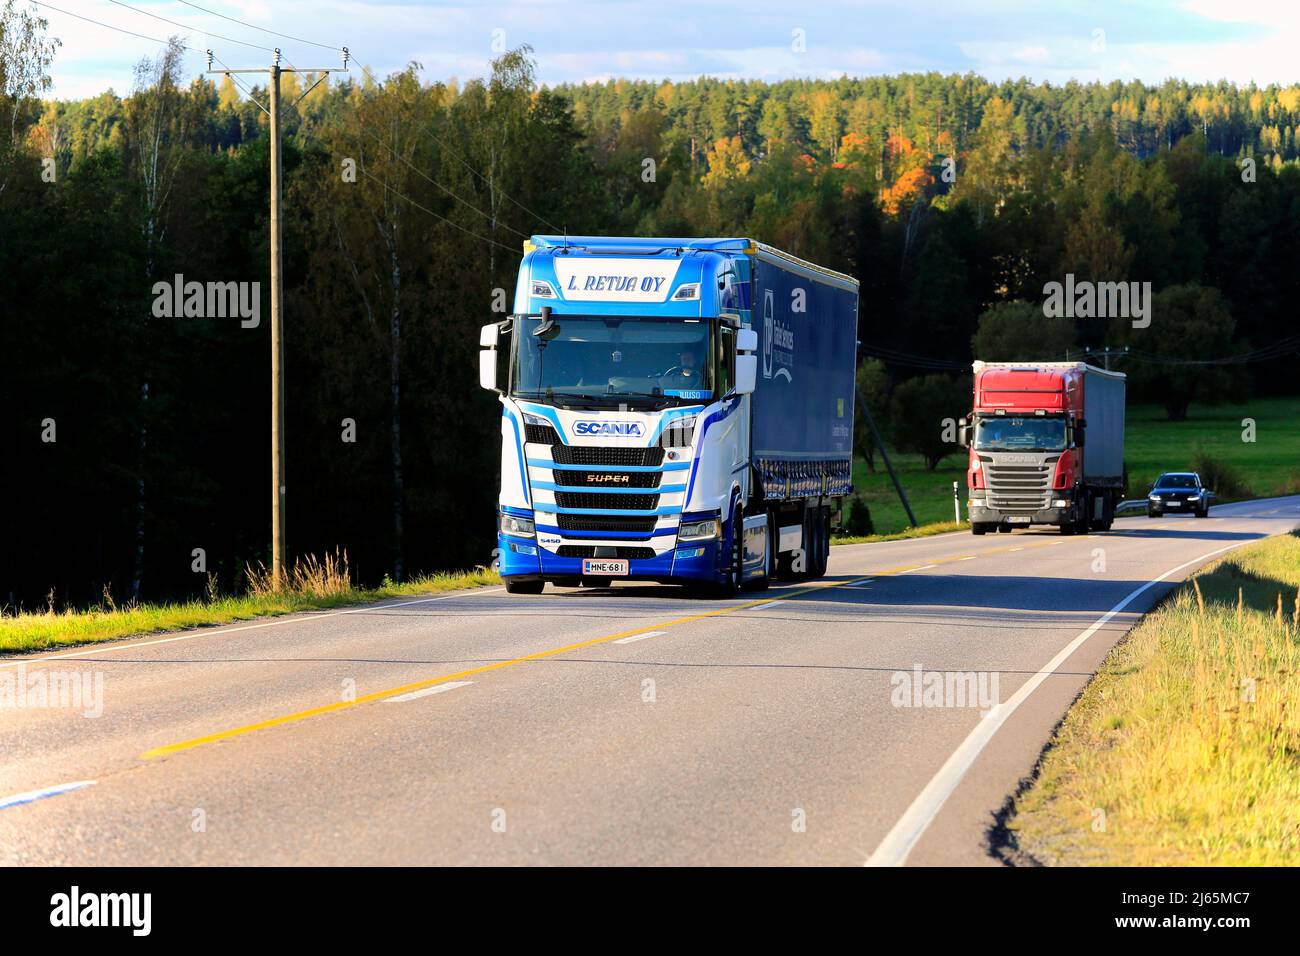 Le camion Scania S450 de L Retva Oy tire une semi-remorque suivie d'un autre camion sur l'autoroute 52 en plein soleil d'automne. Tenhola, Finlande. 27 septembre 2019. Banque D'Images